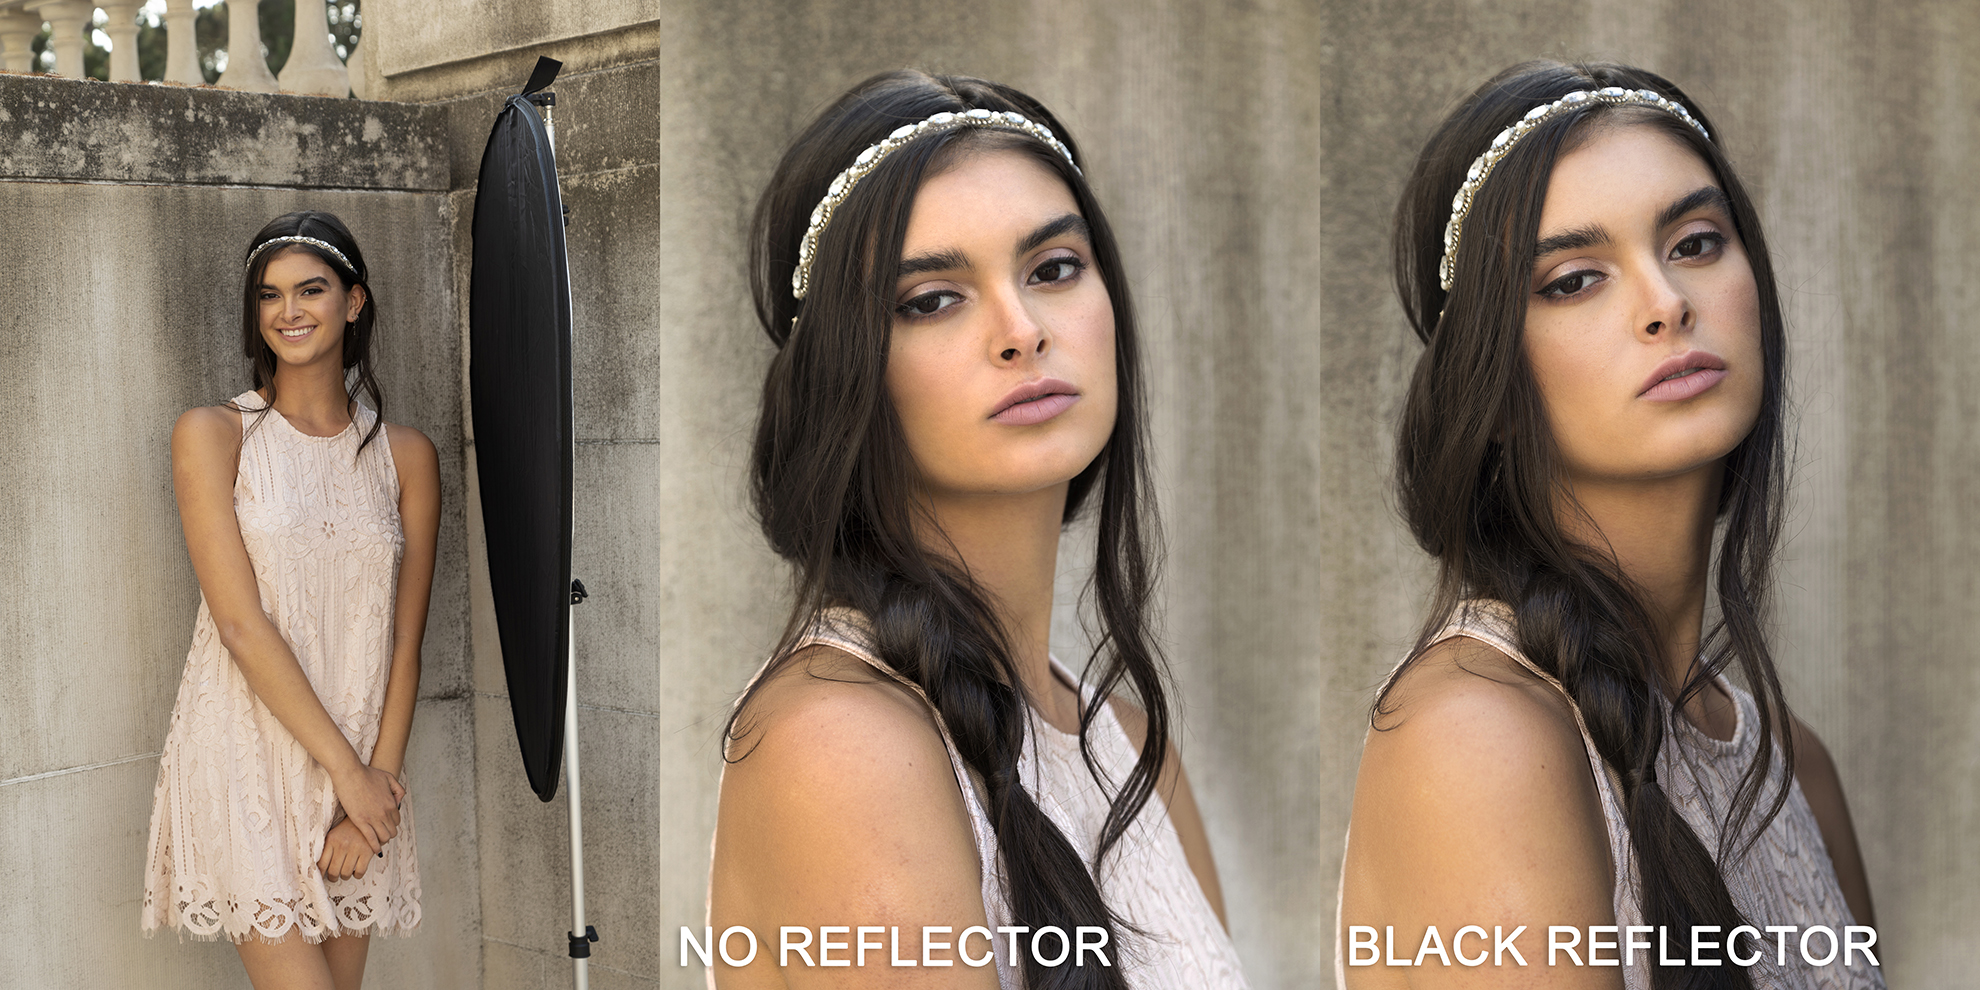 Portraits comparing no reflector and a black reflector